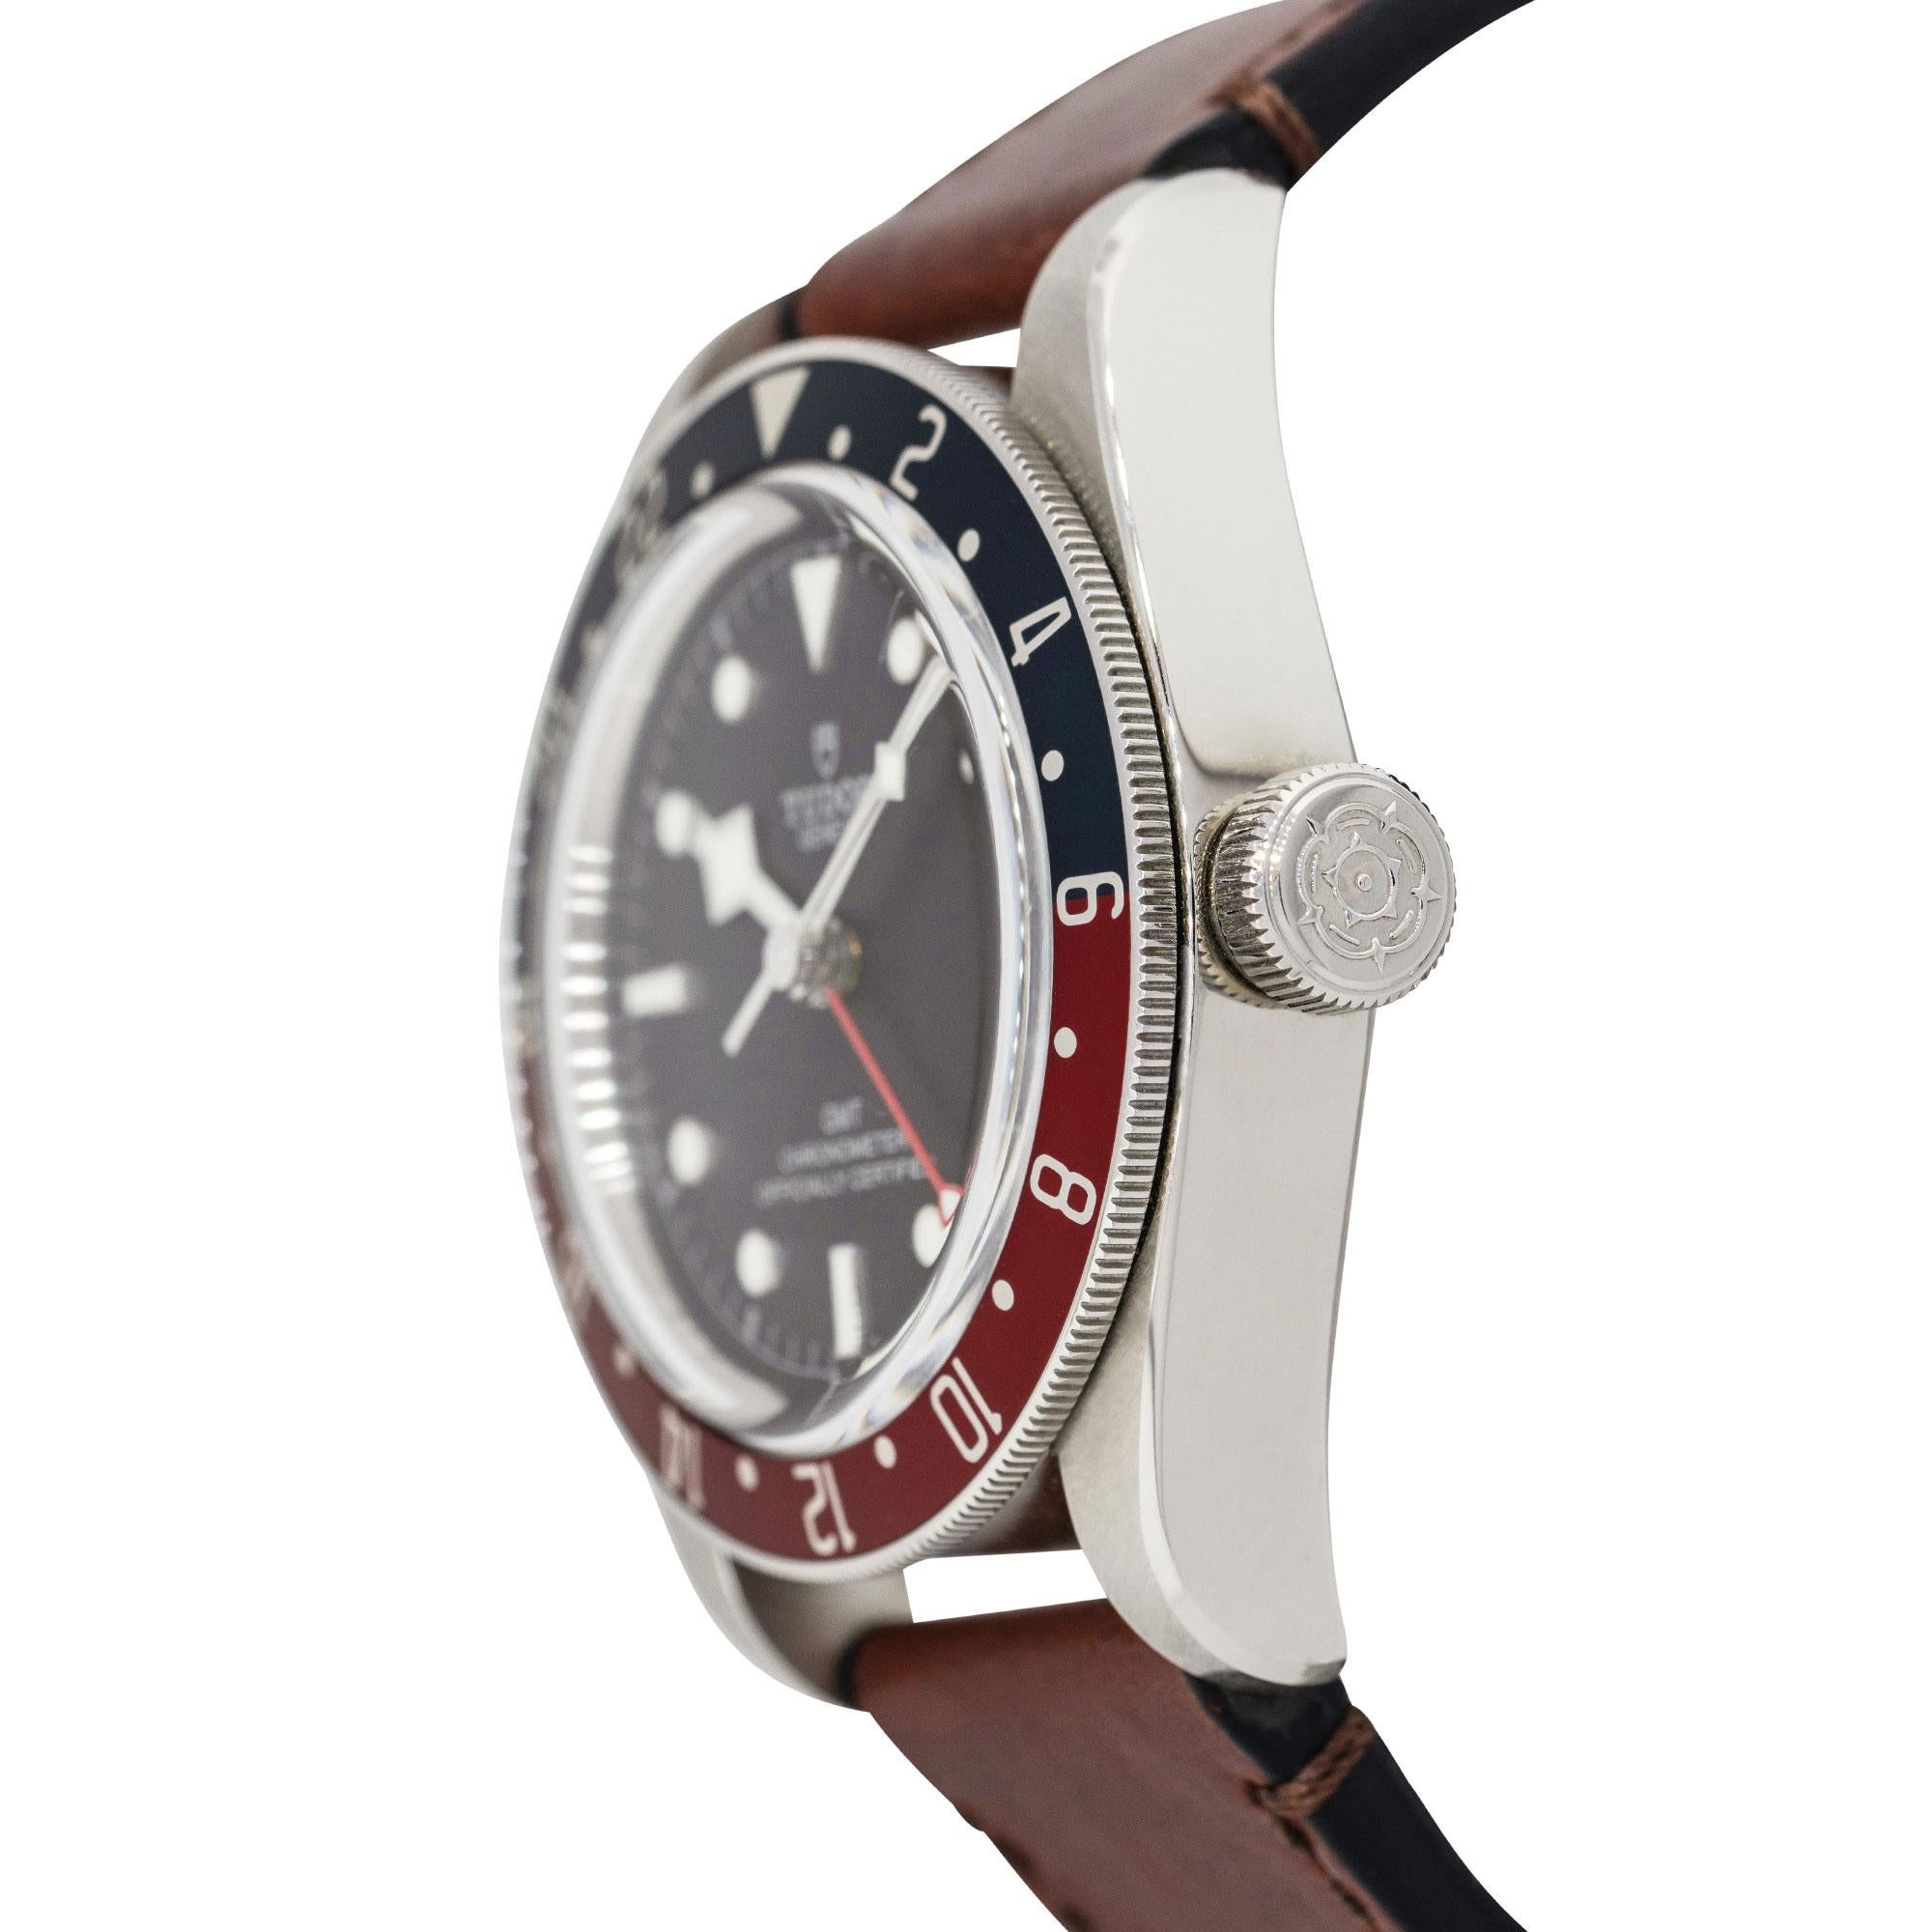 Brand: Tudor
MPN: 79830RB
Model: GMT 